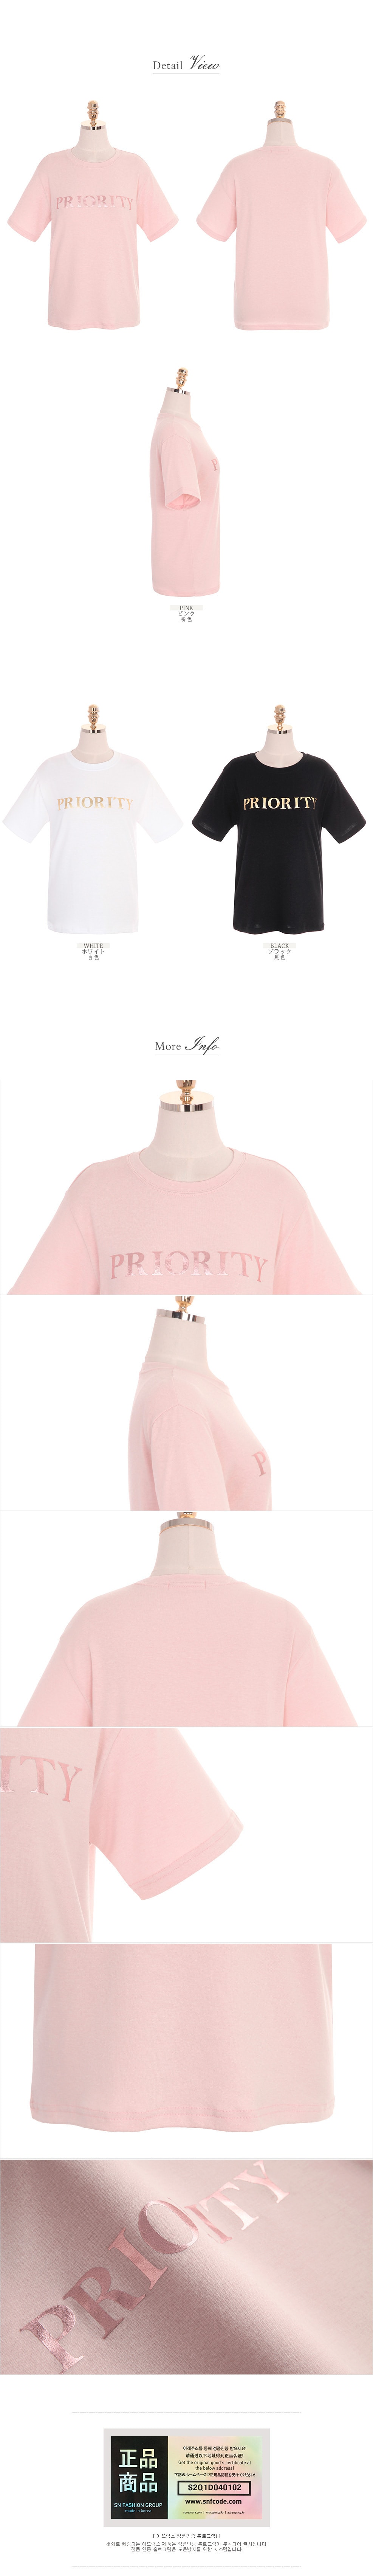 T shirt Pink free